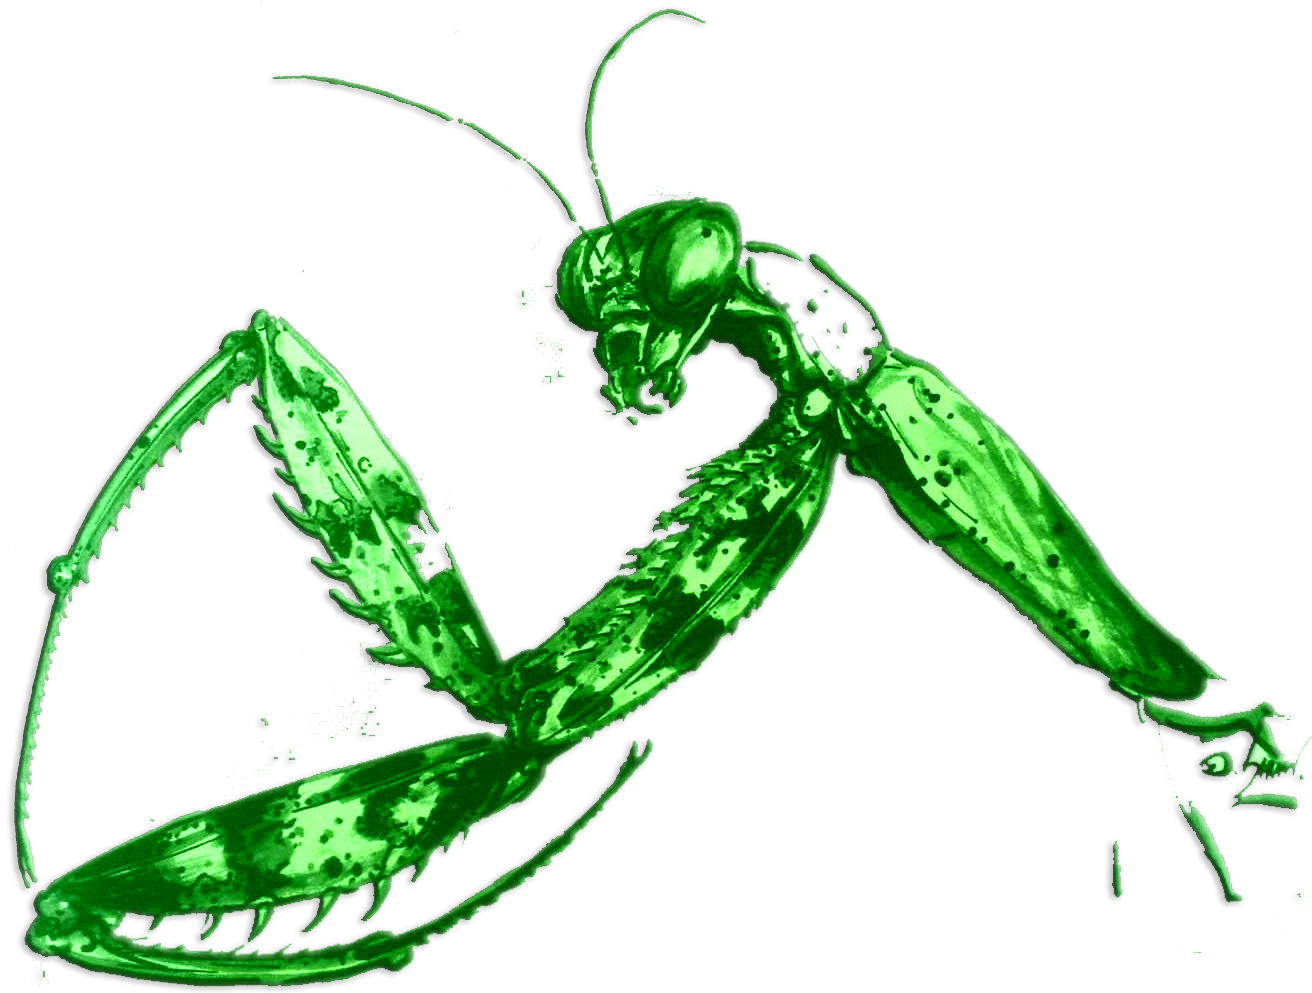 Northern Style Praying Mantis - Praying Mantis Kung Fu Logo (1312x993)